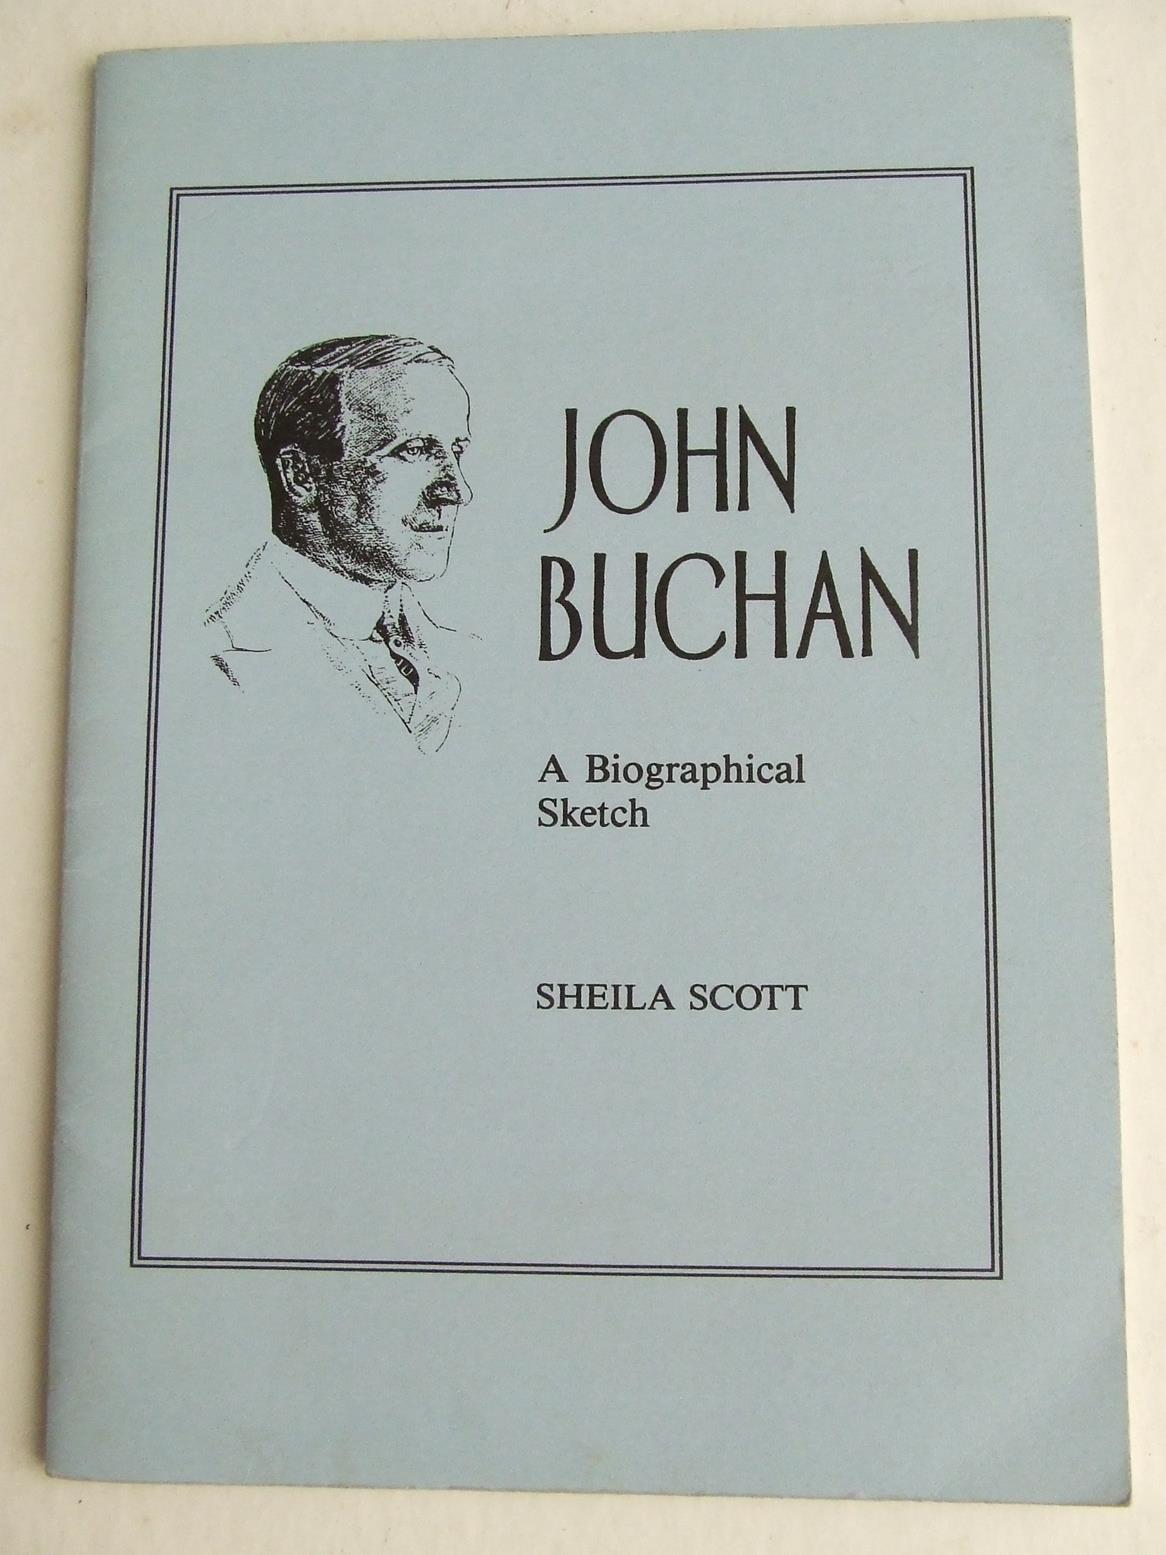 John Buchan, a biographical sketch